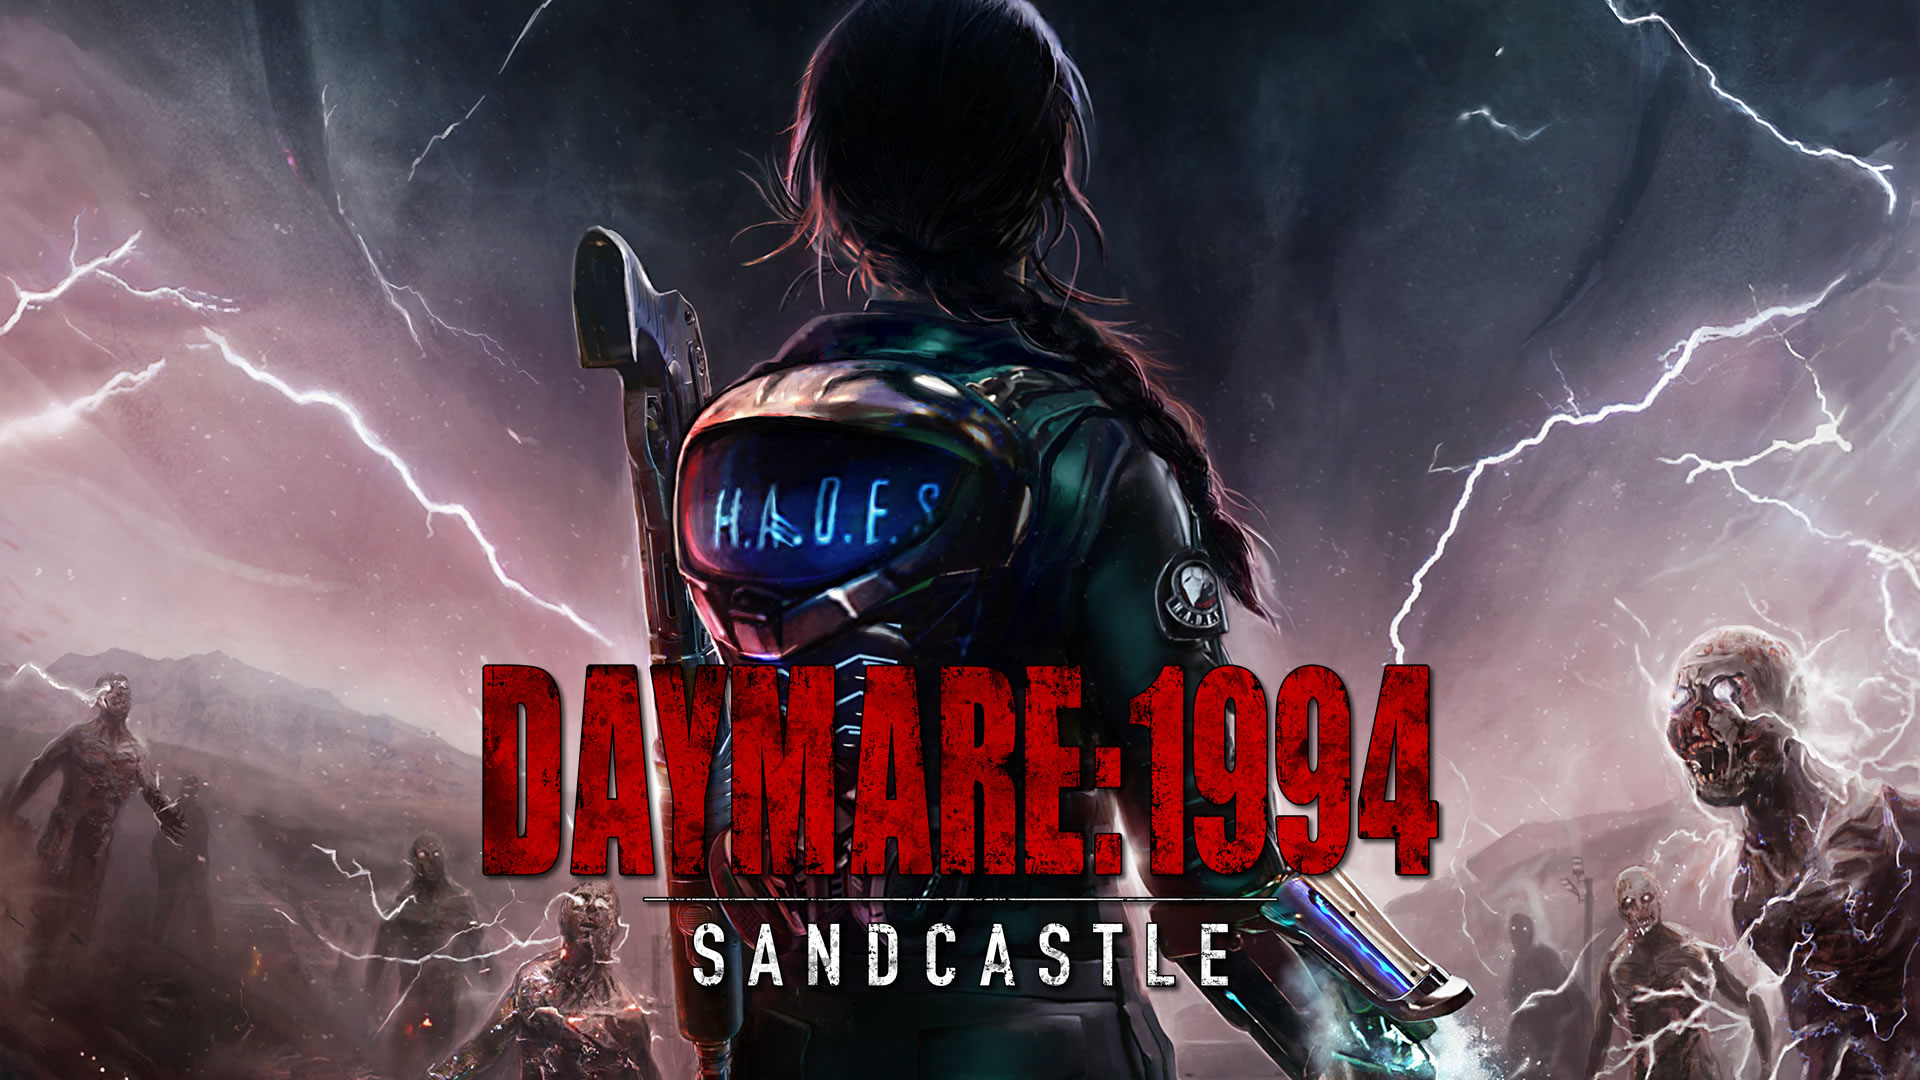 Daymare 1994, el juego que recuerda a los mejores años del terror.